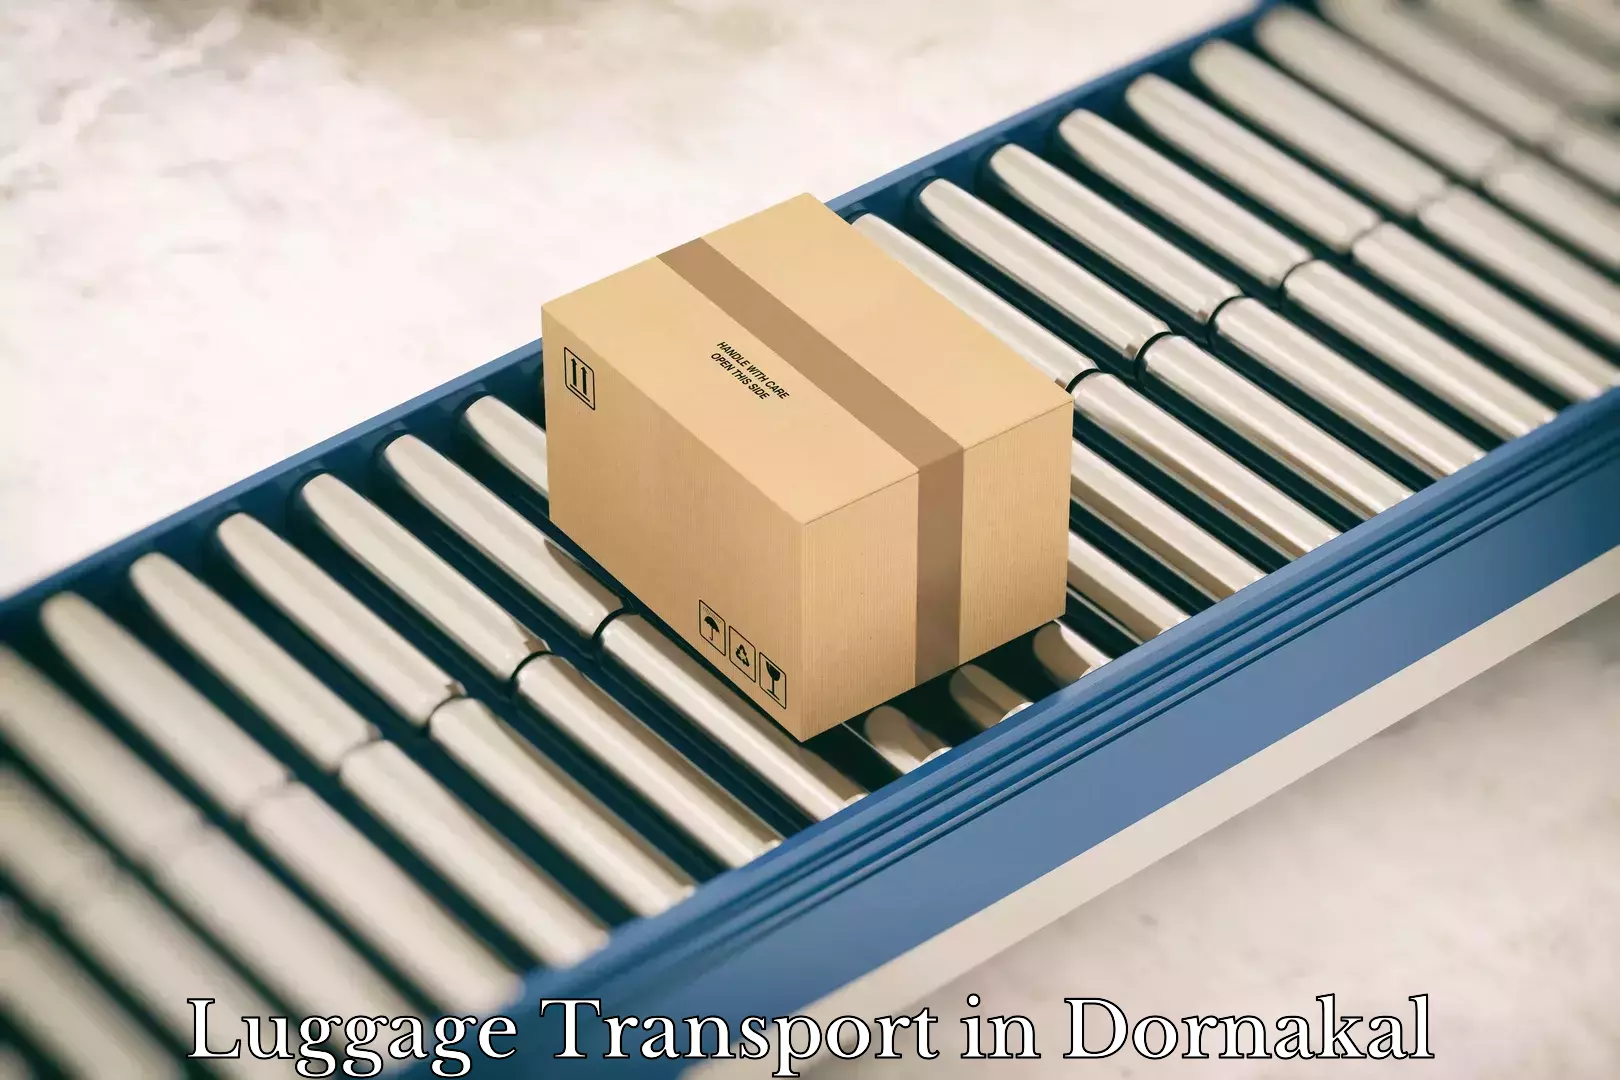 Luggage transport deals in Dornakal